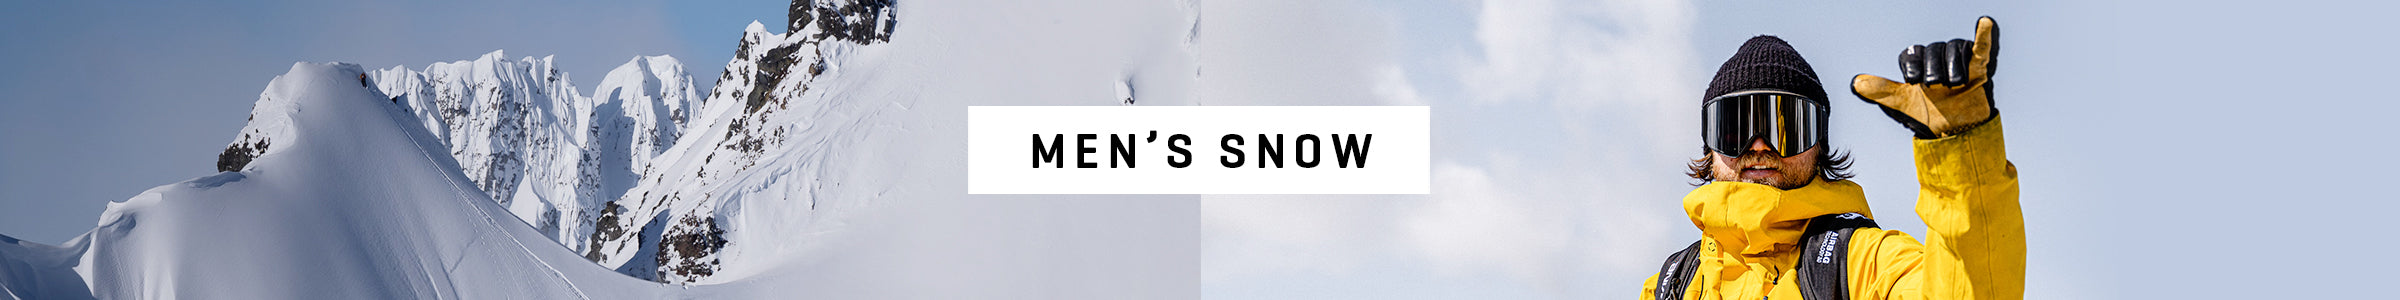 Men's Snow